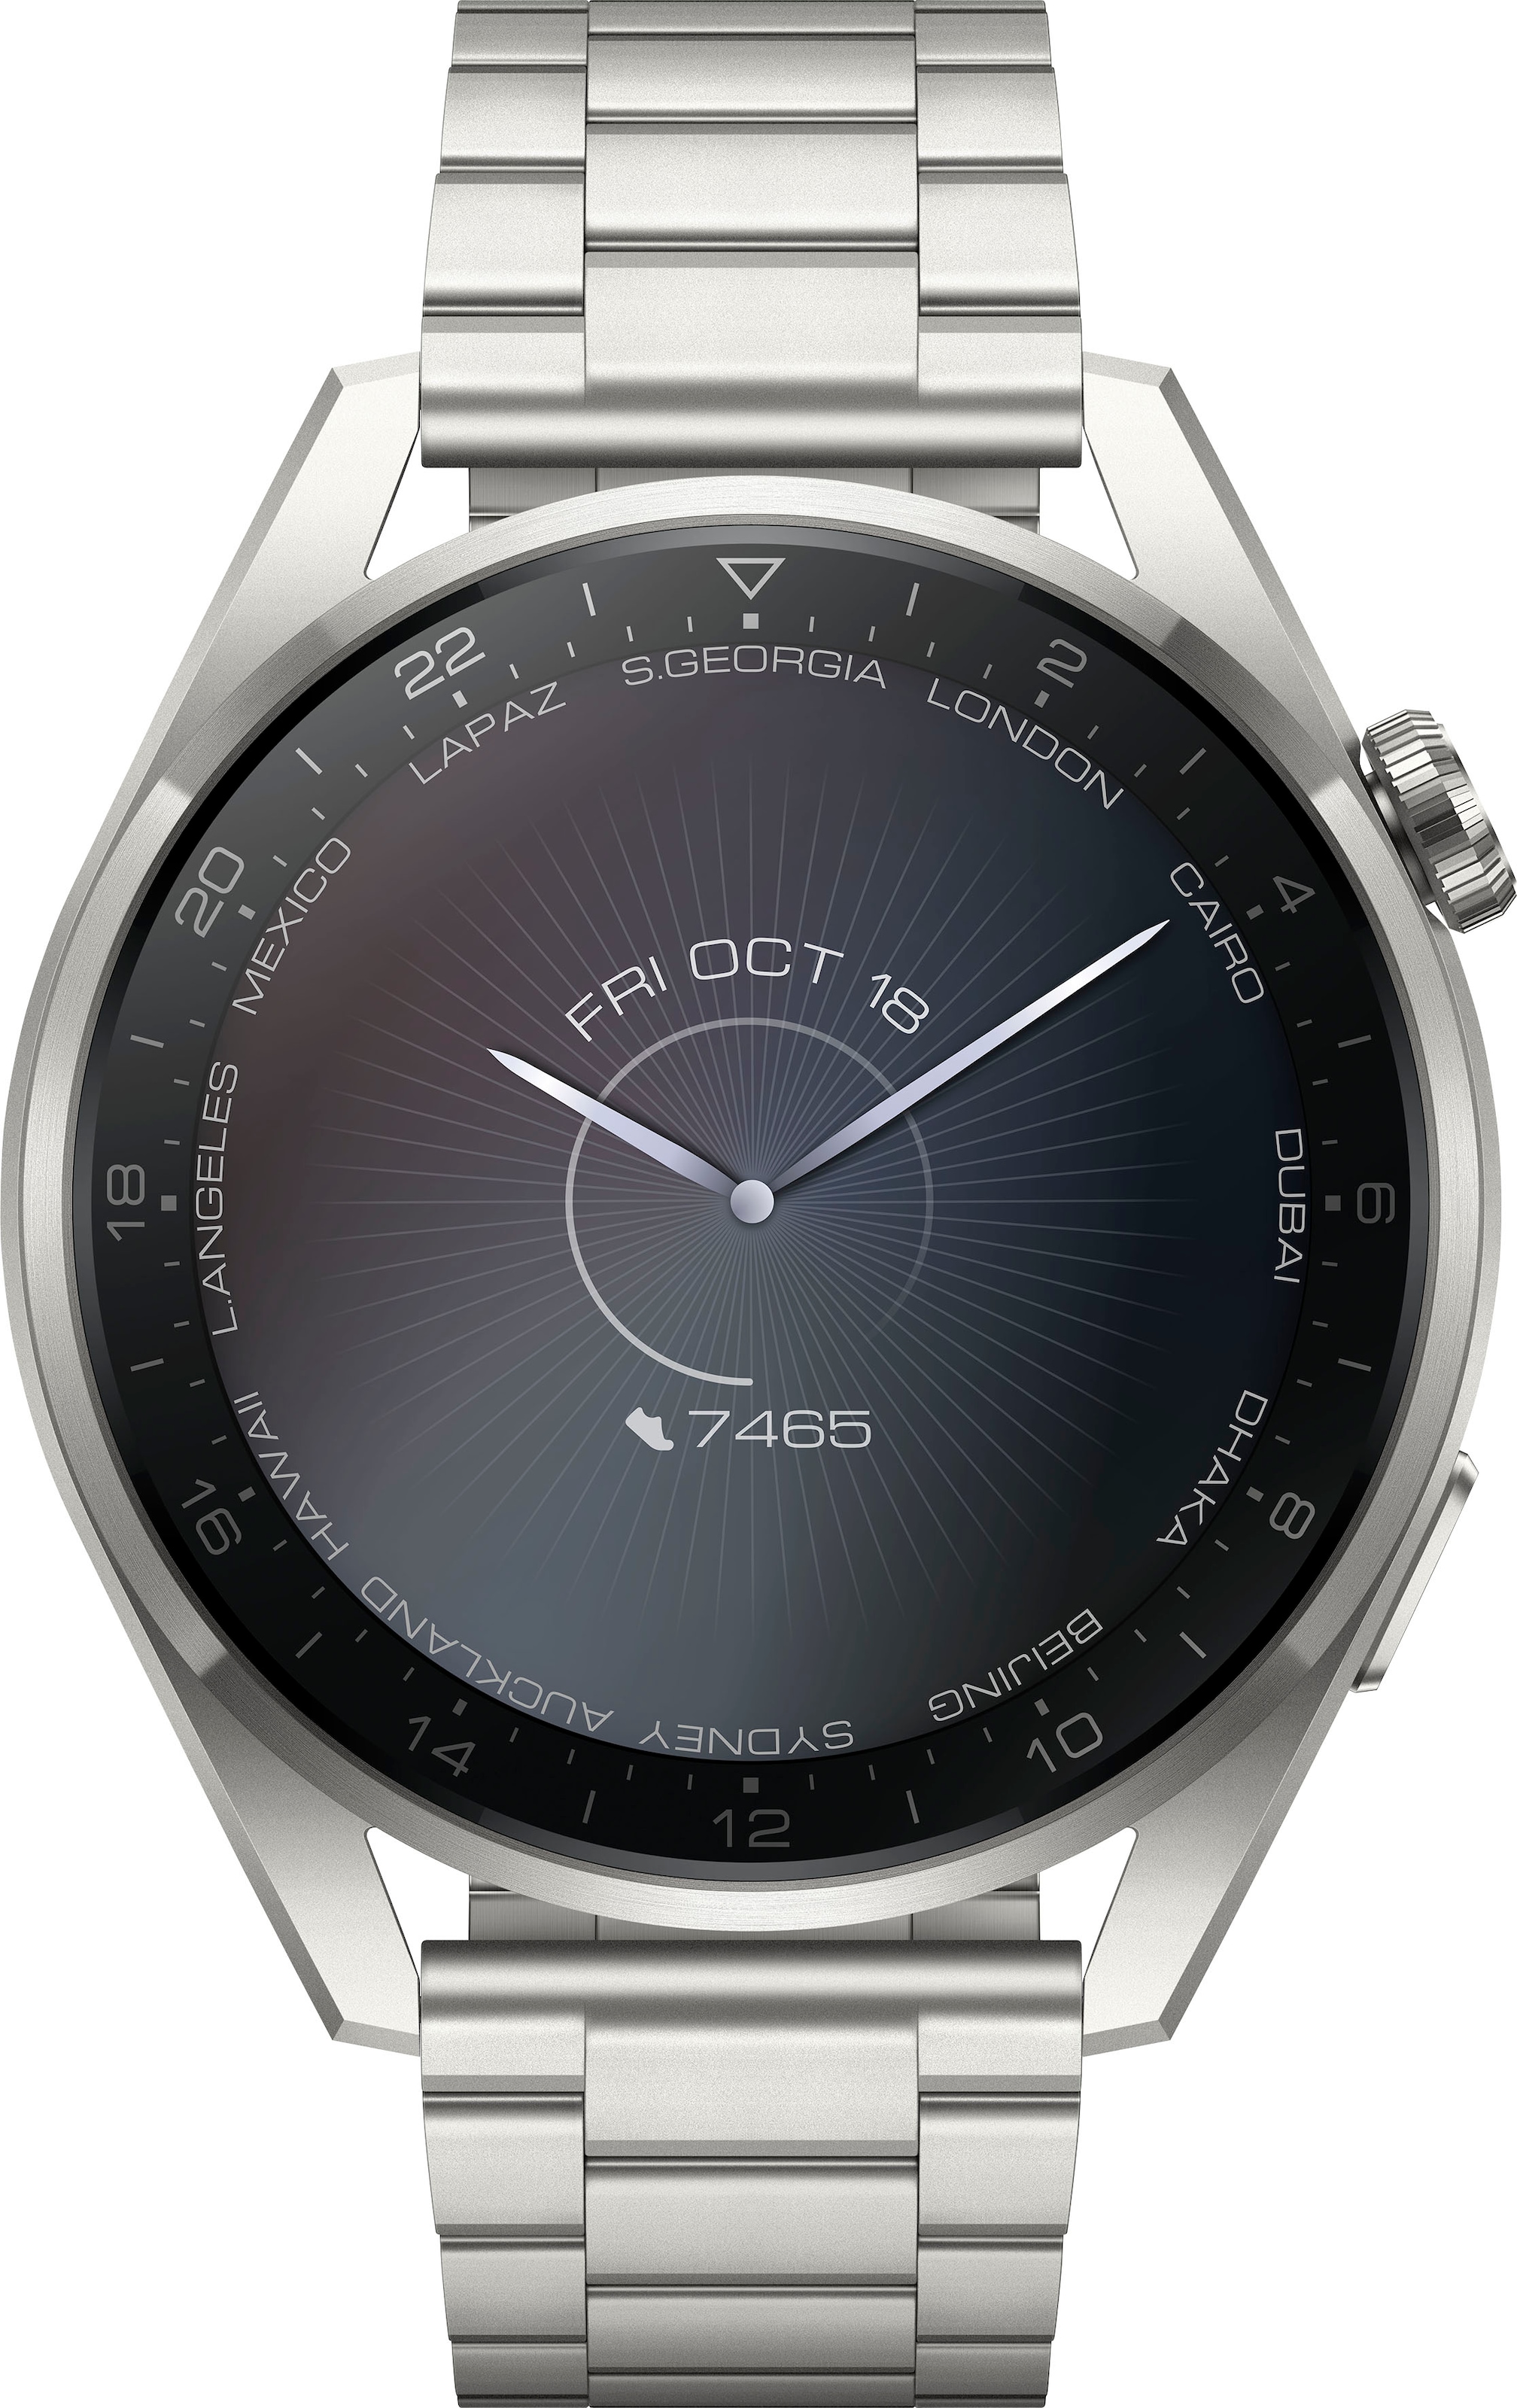 OS OTTO Online 3 3 (Harmony Huawei Jahre Elite Shop Smartwatch Galileo-L50E«, »WATCH im Herstellergarantie) Pro